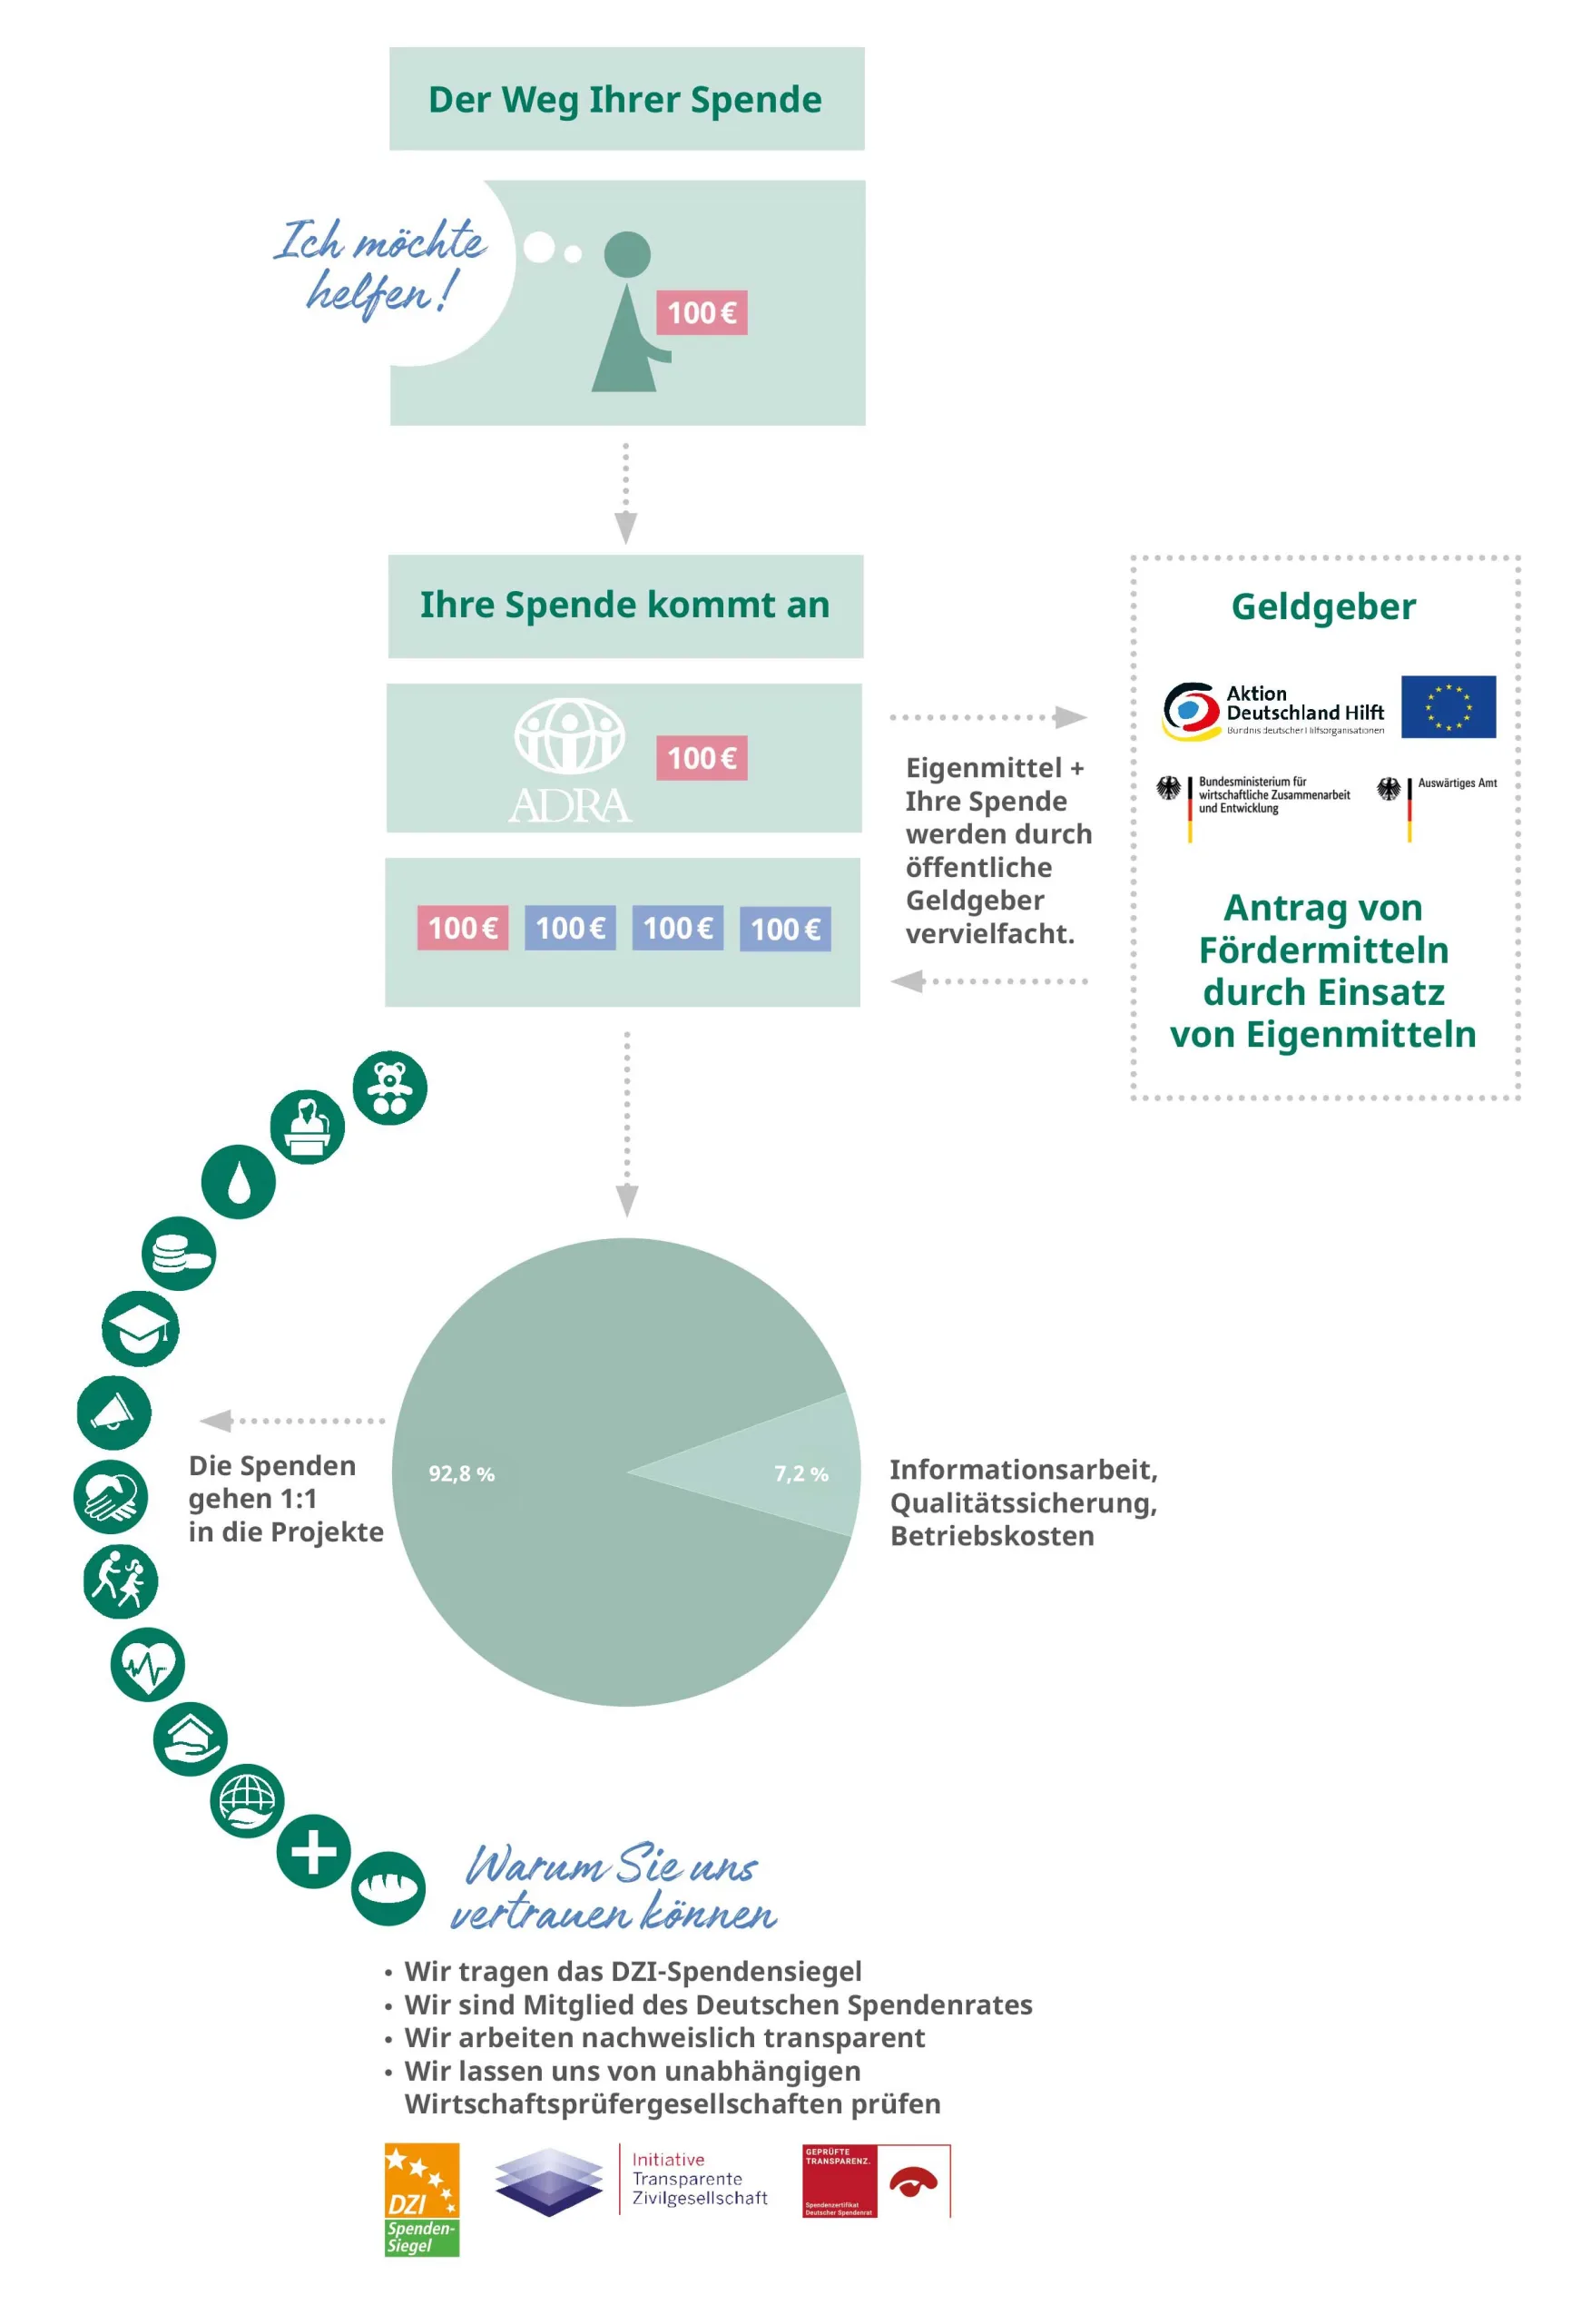 Der Weg Ihrer Spenden: Eine Infografik von ADRA